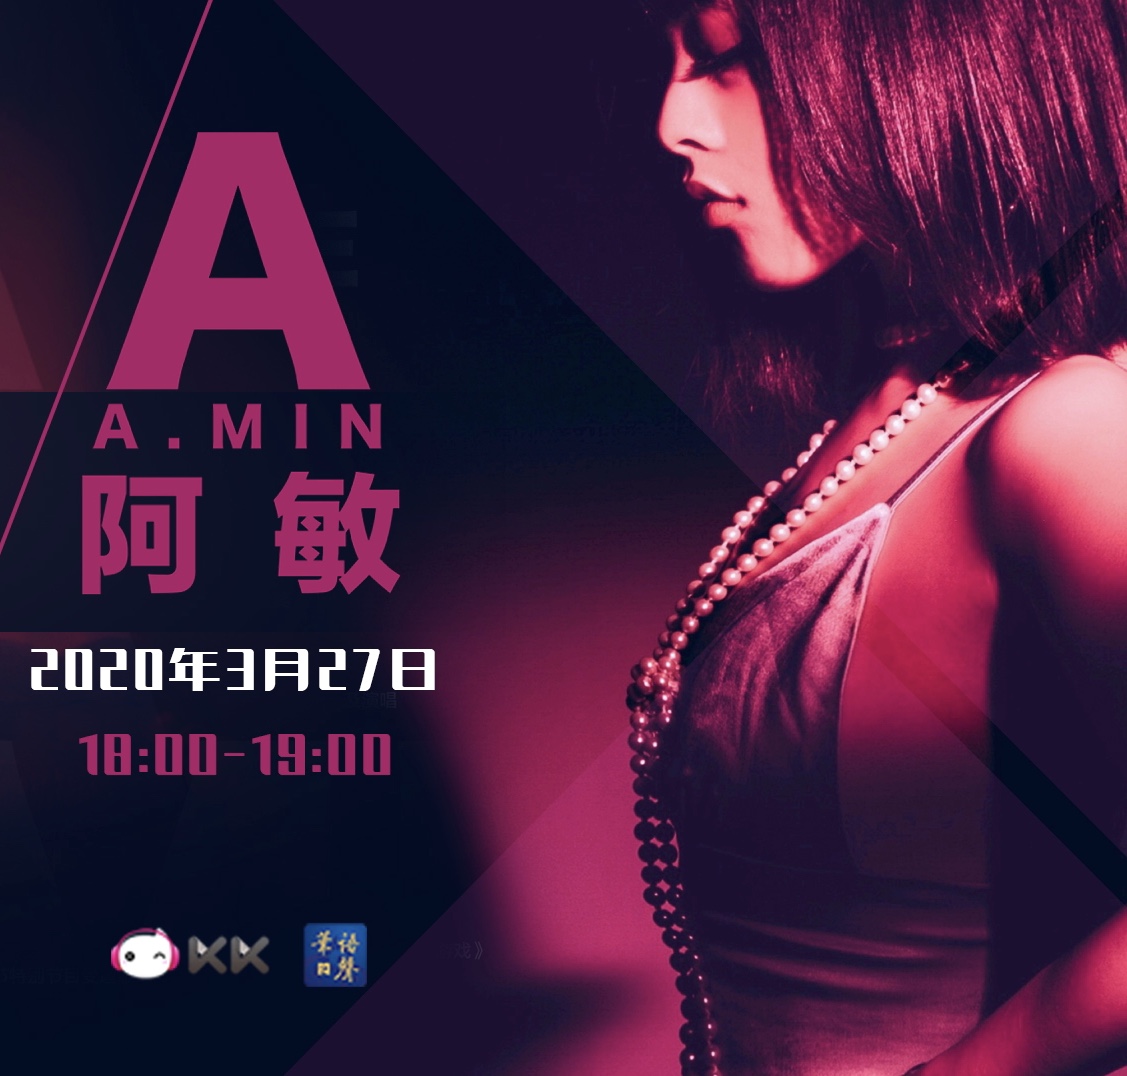 华语之声《环球音乐转不停》专访歌手A.MIN阿敏